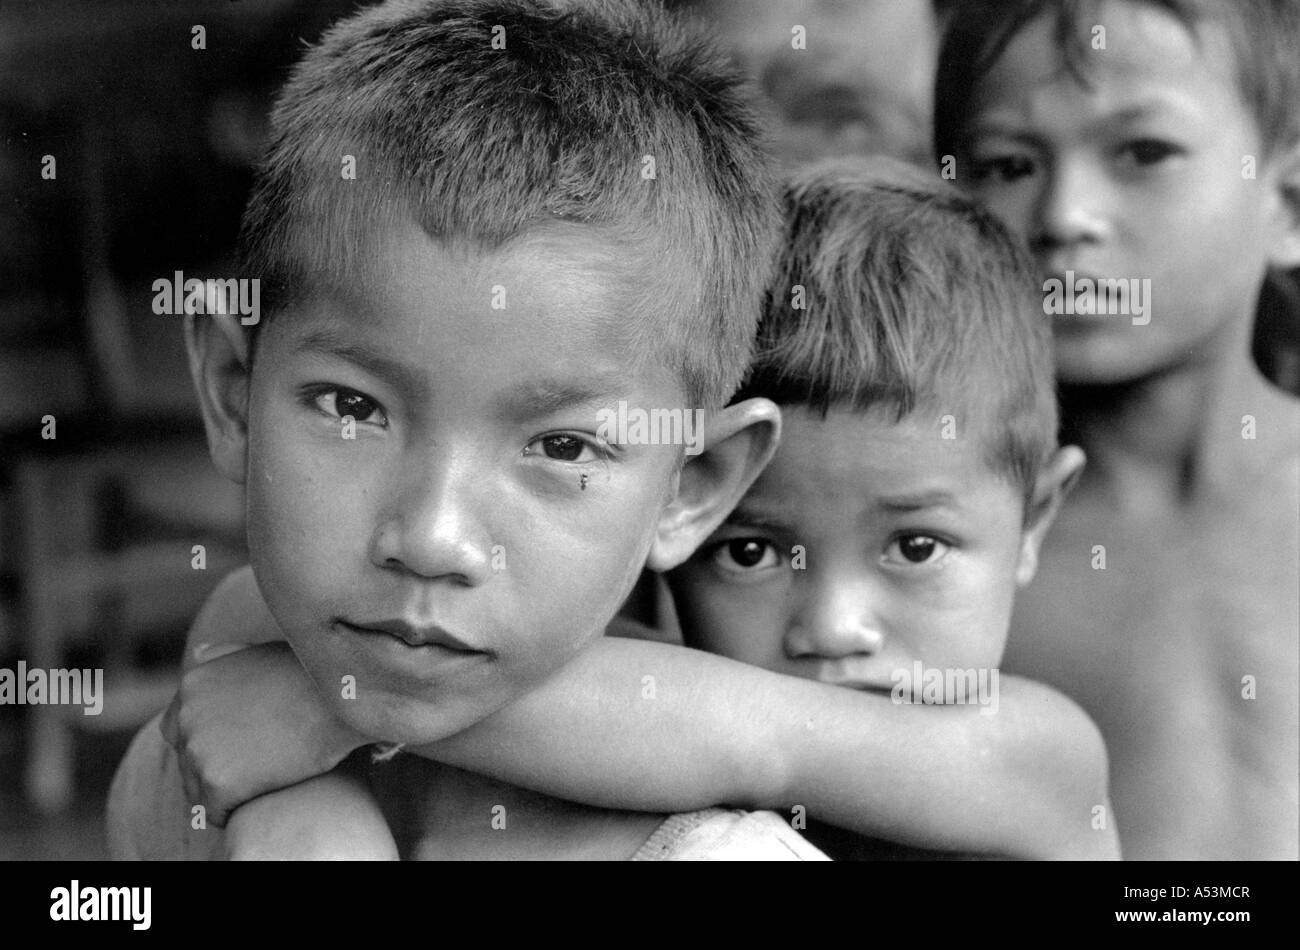 Painet ha1396 210 in bianco e nero di bambini ragazzi battambang cambogia paese nazione in via di sviluppo meno sviluppati dal punto di vista economico Foto Stock